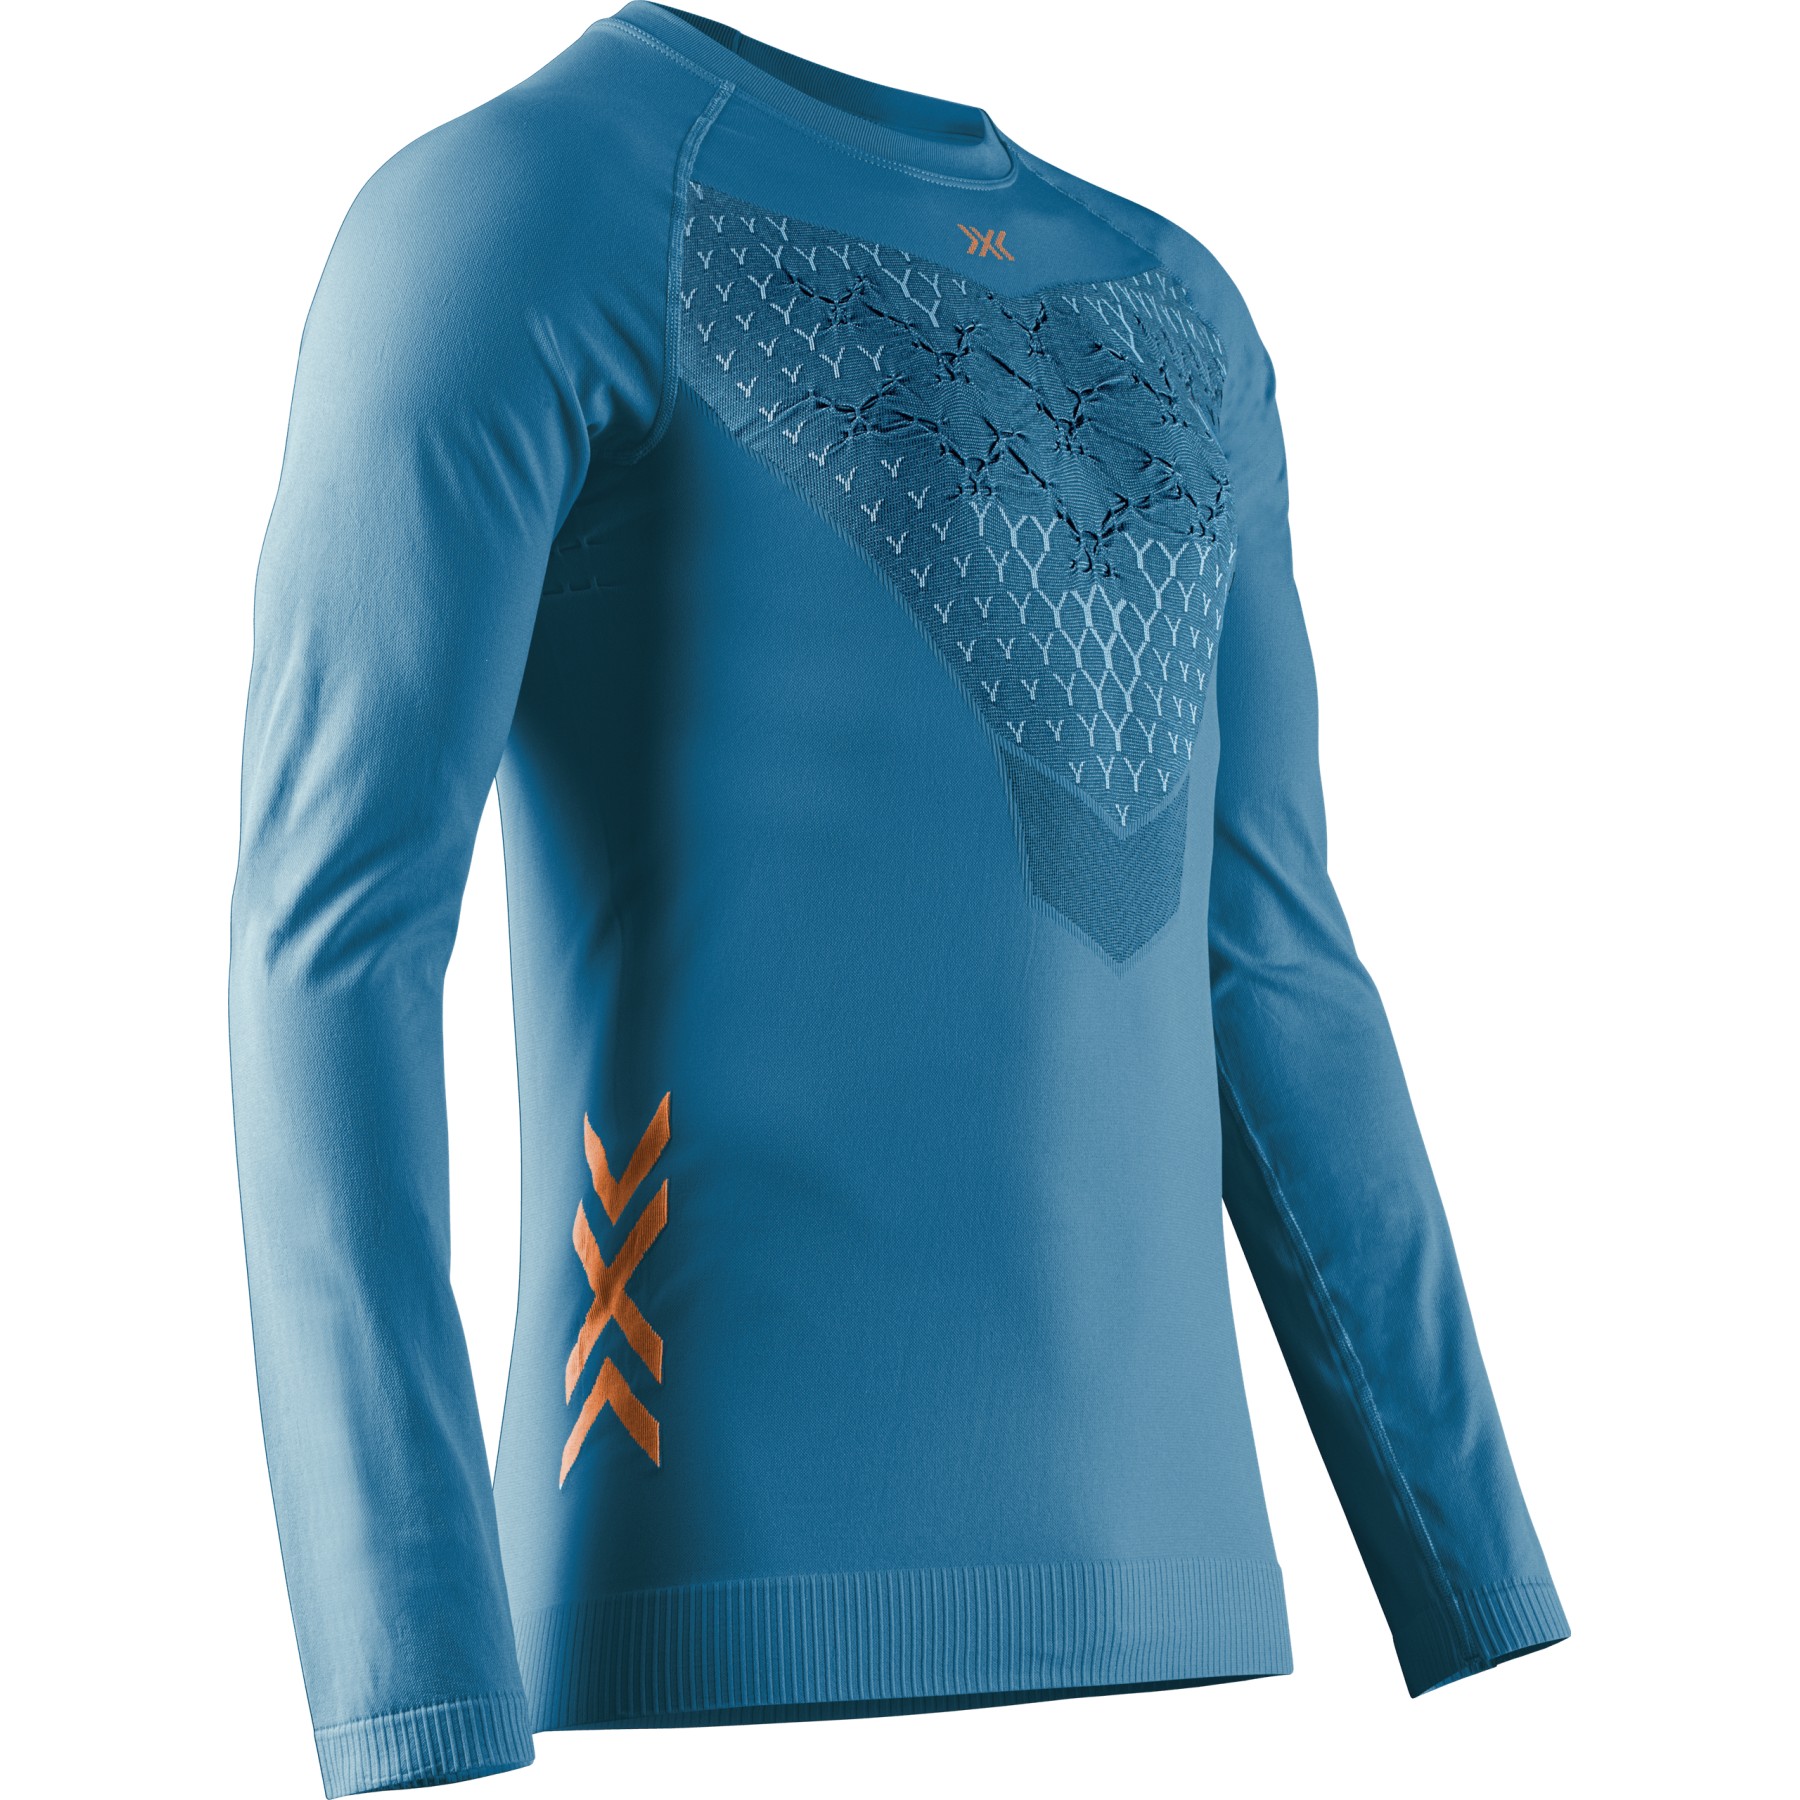 Produktbild von X-Bionic Twyce Langarm-Laufshirt Herren - mineral blue/orange